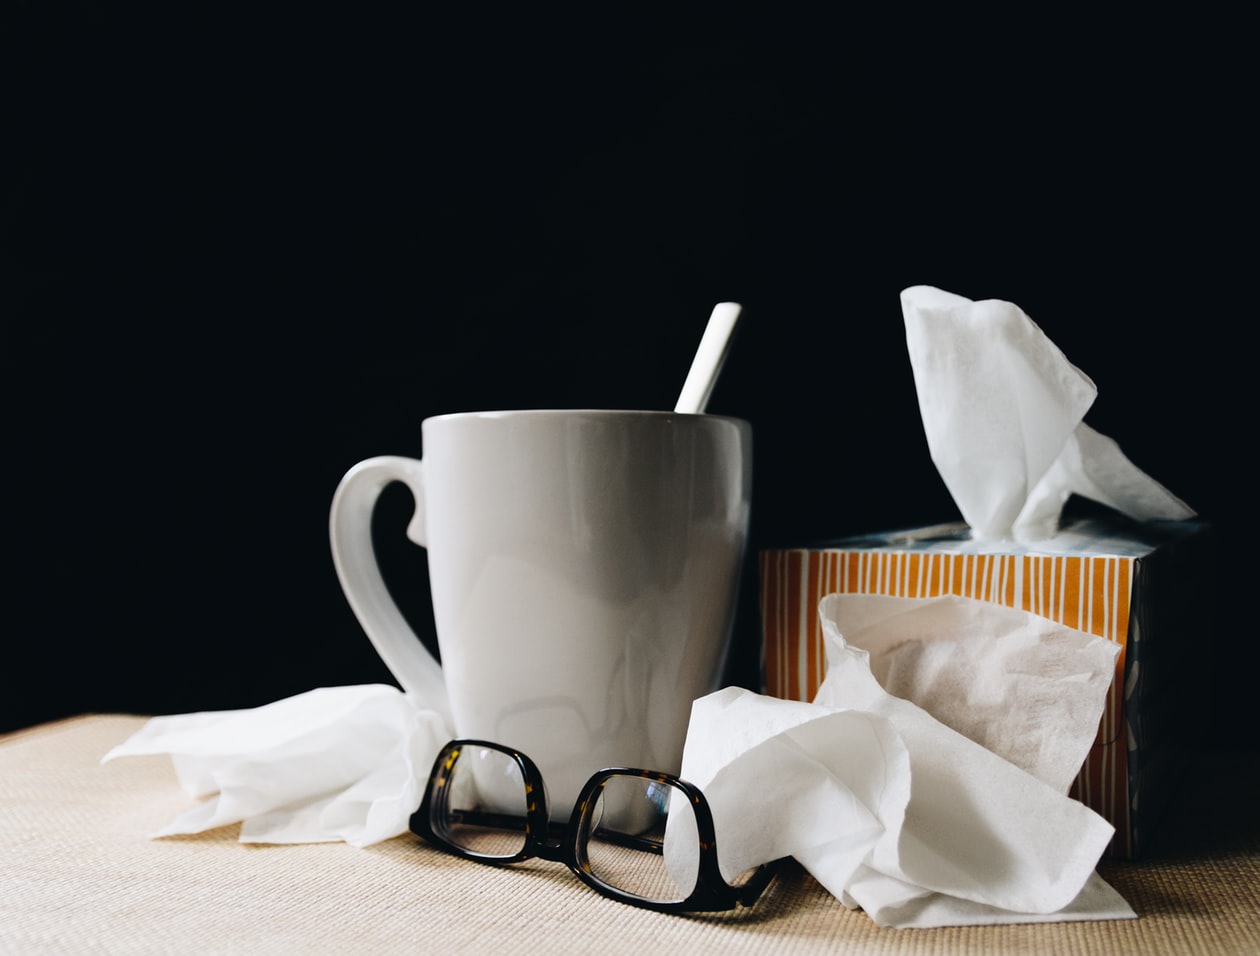 Συμπτώματα – Κορωνοϊός: Οι διαφορές από τη γρίπη και το κρυολόγημα